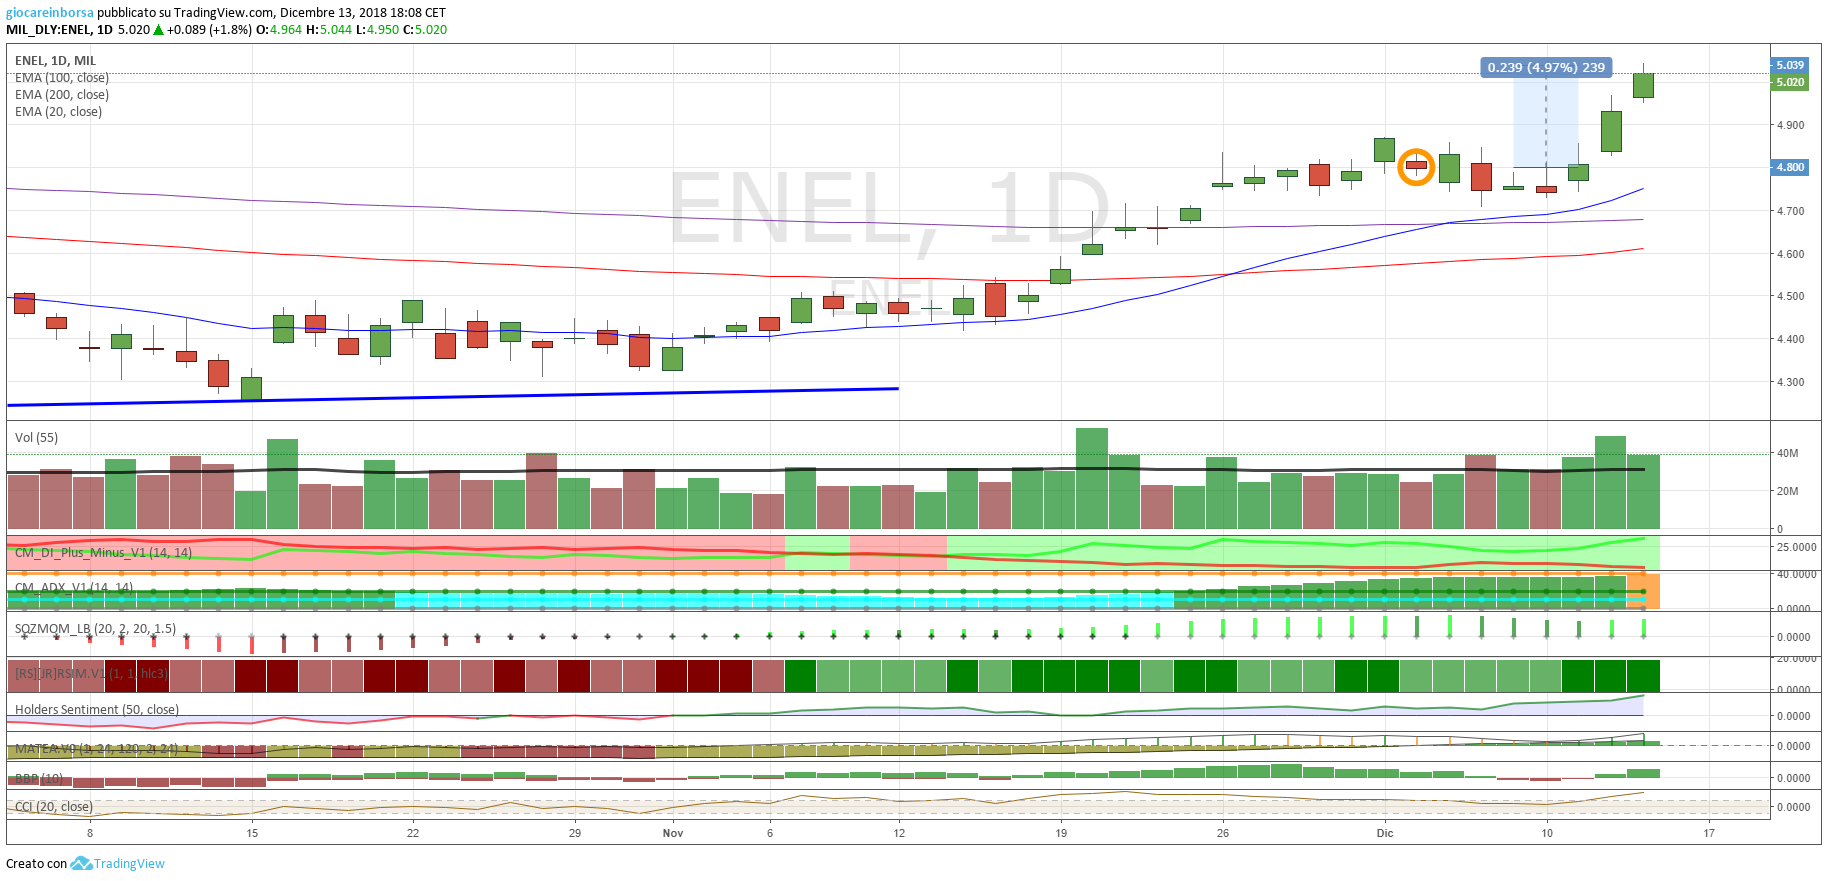 Azioni Enel, ancora più in alto